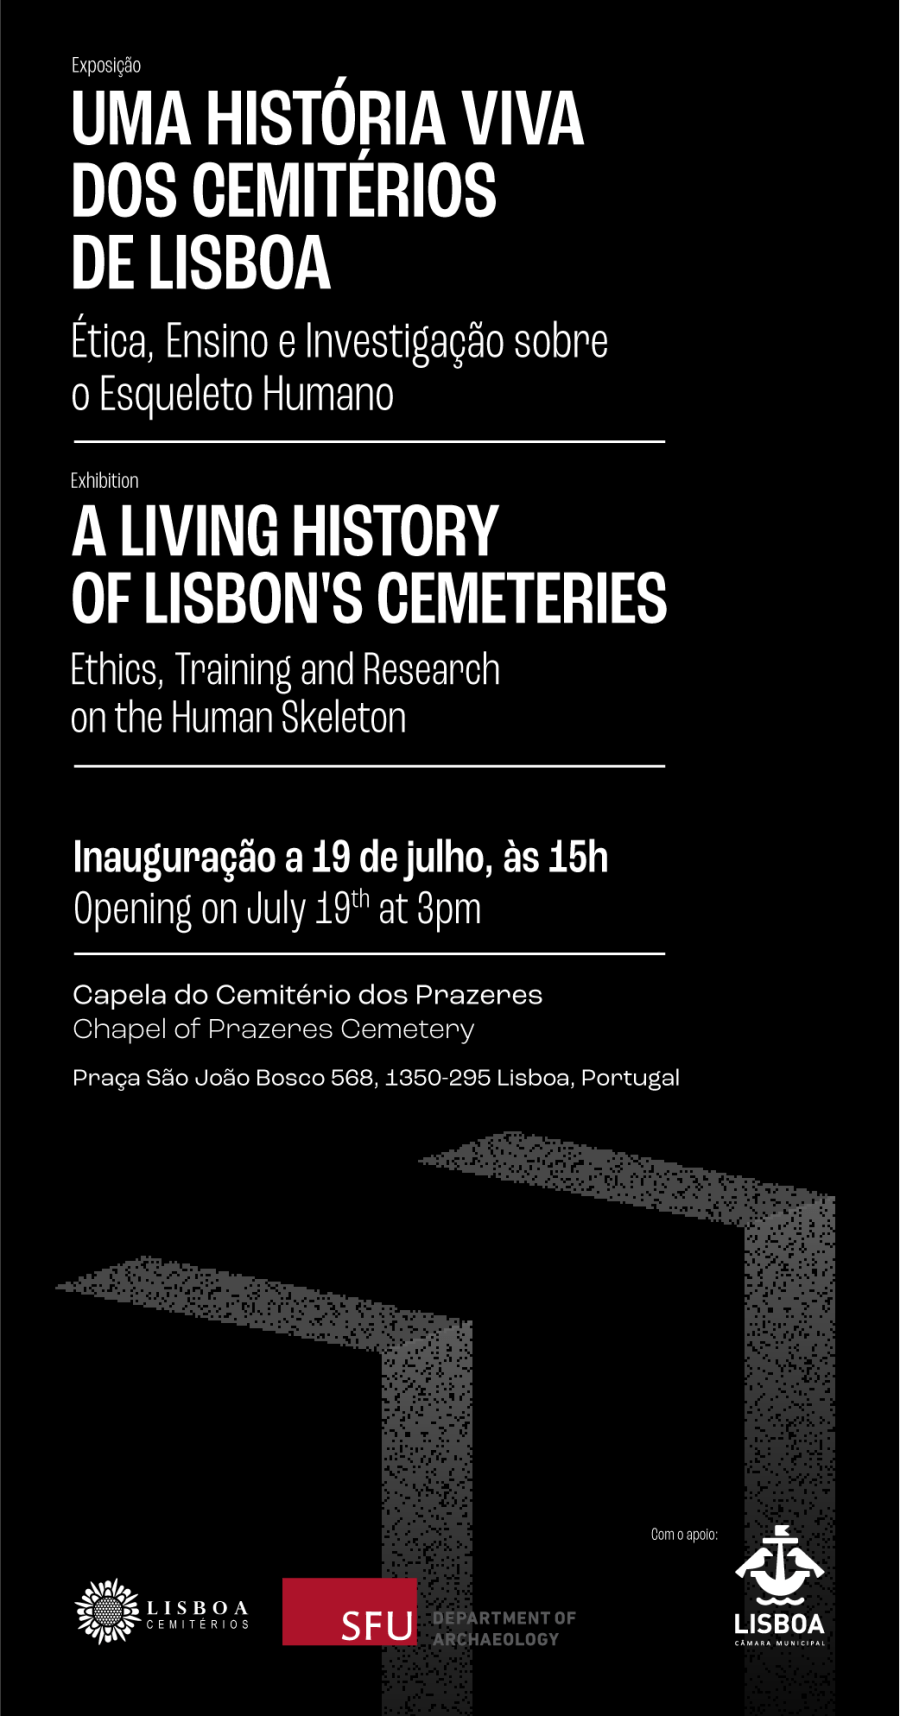 Uma História Viva dos Cemitérios de Lisboa: Ética, Ensino e Investigação sobre o Esqueleto Humano